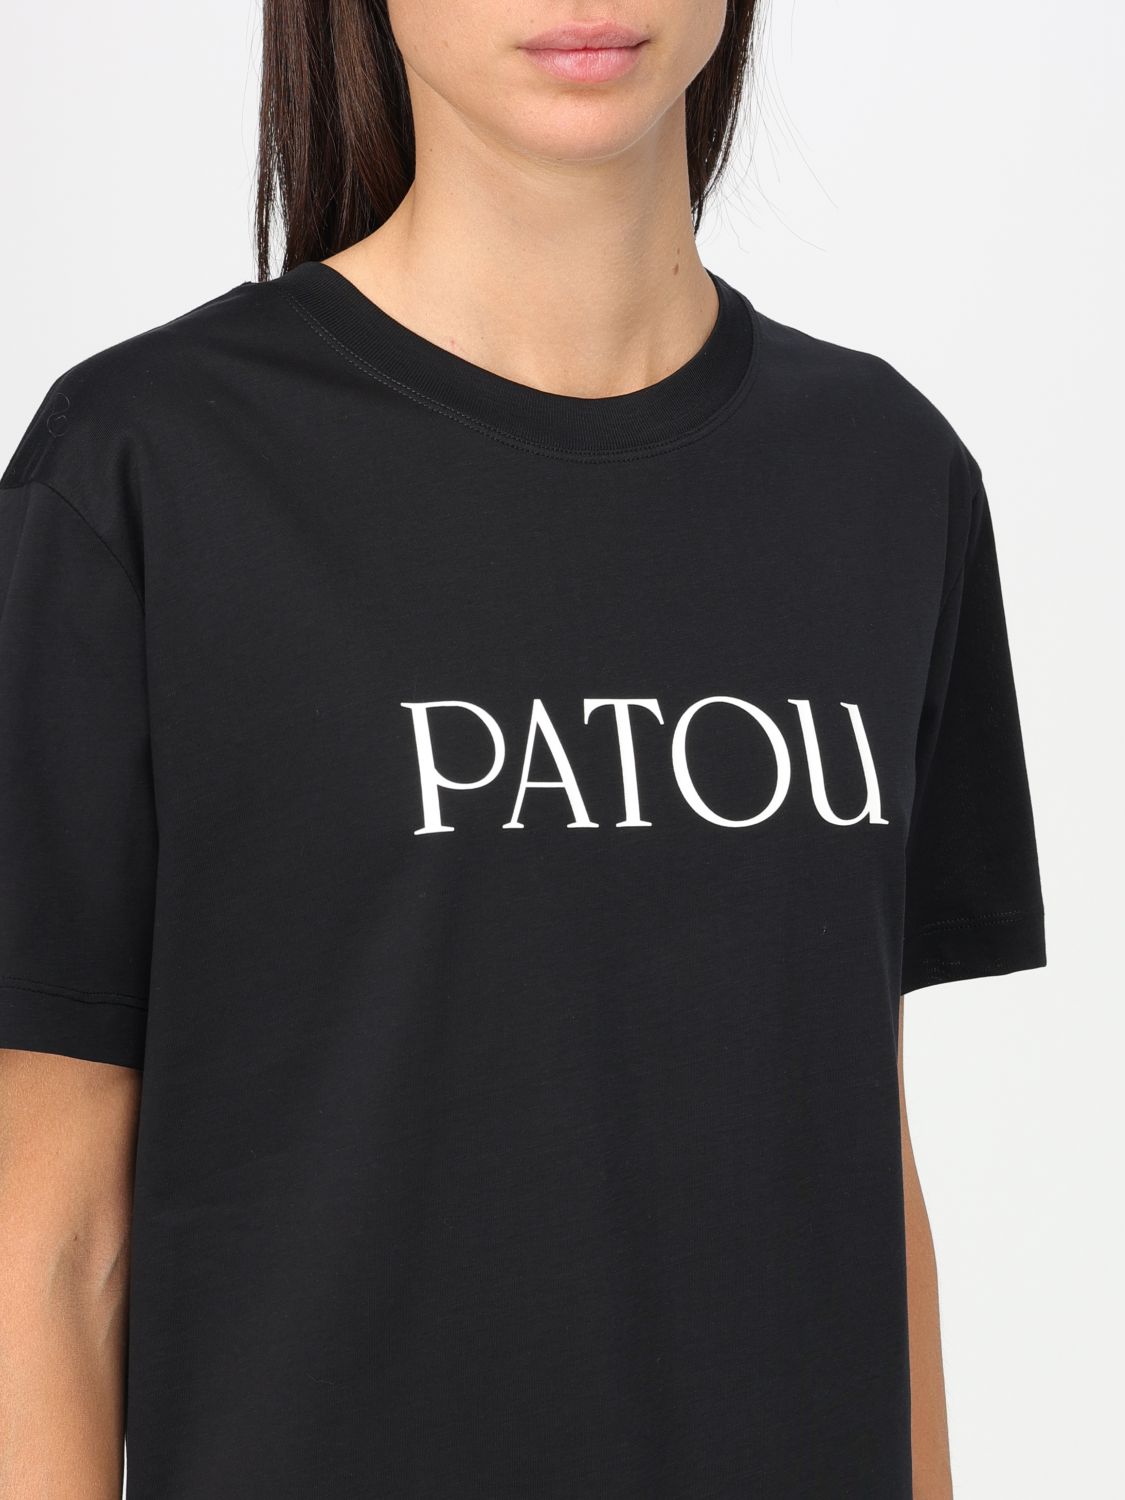 PATOU: t-shirt for woman - Black | Patou t-shirt JE0299999